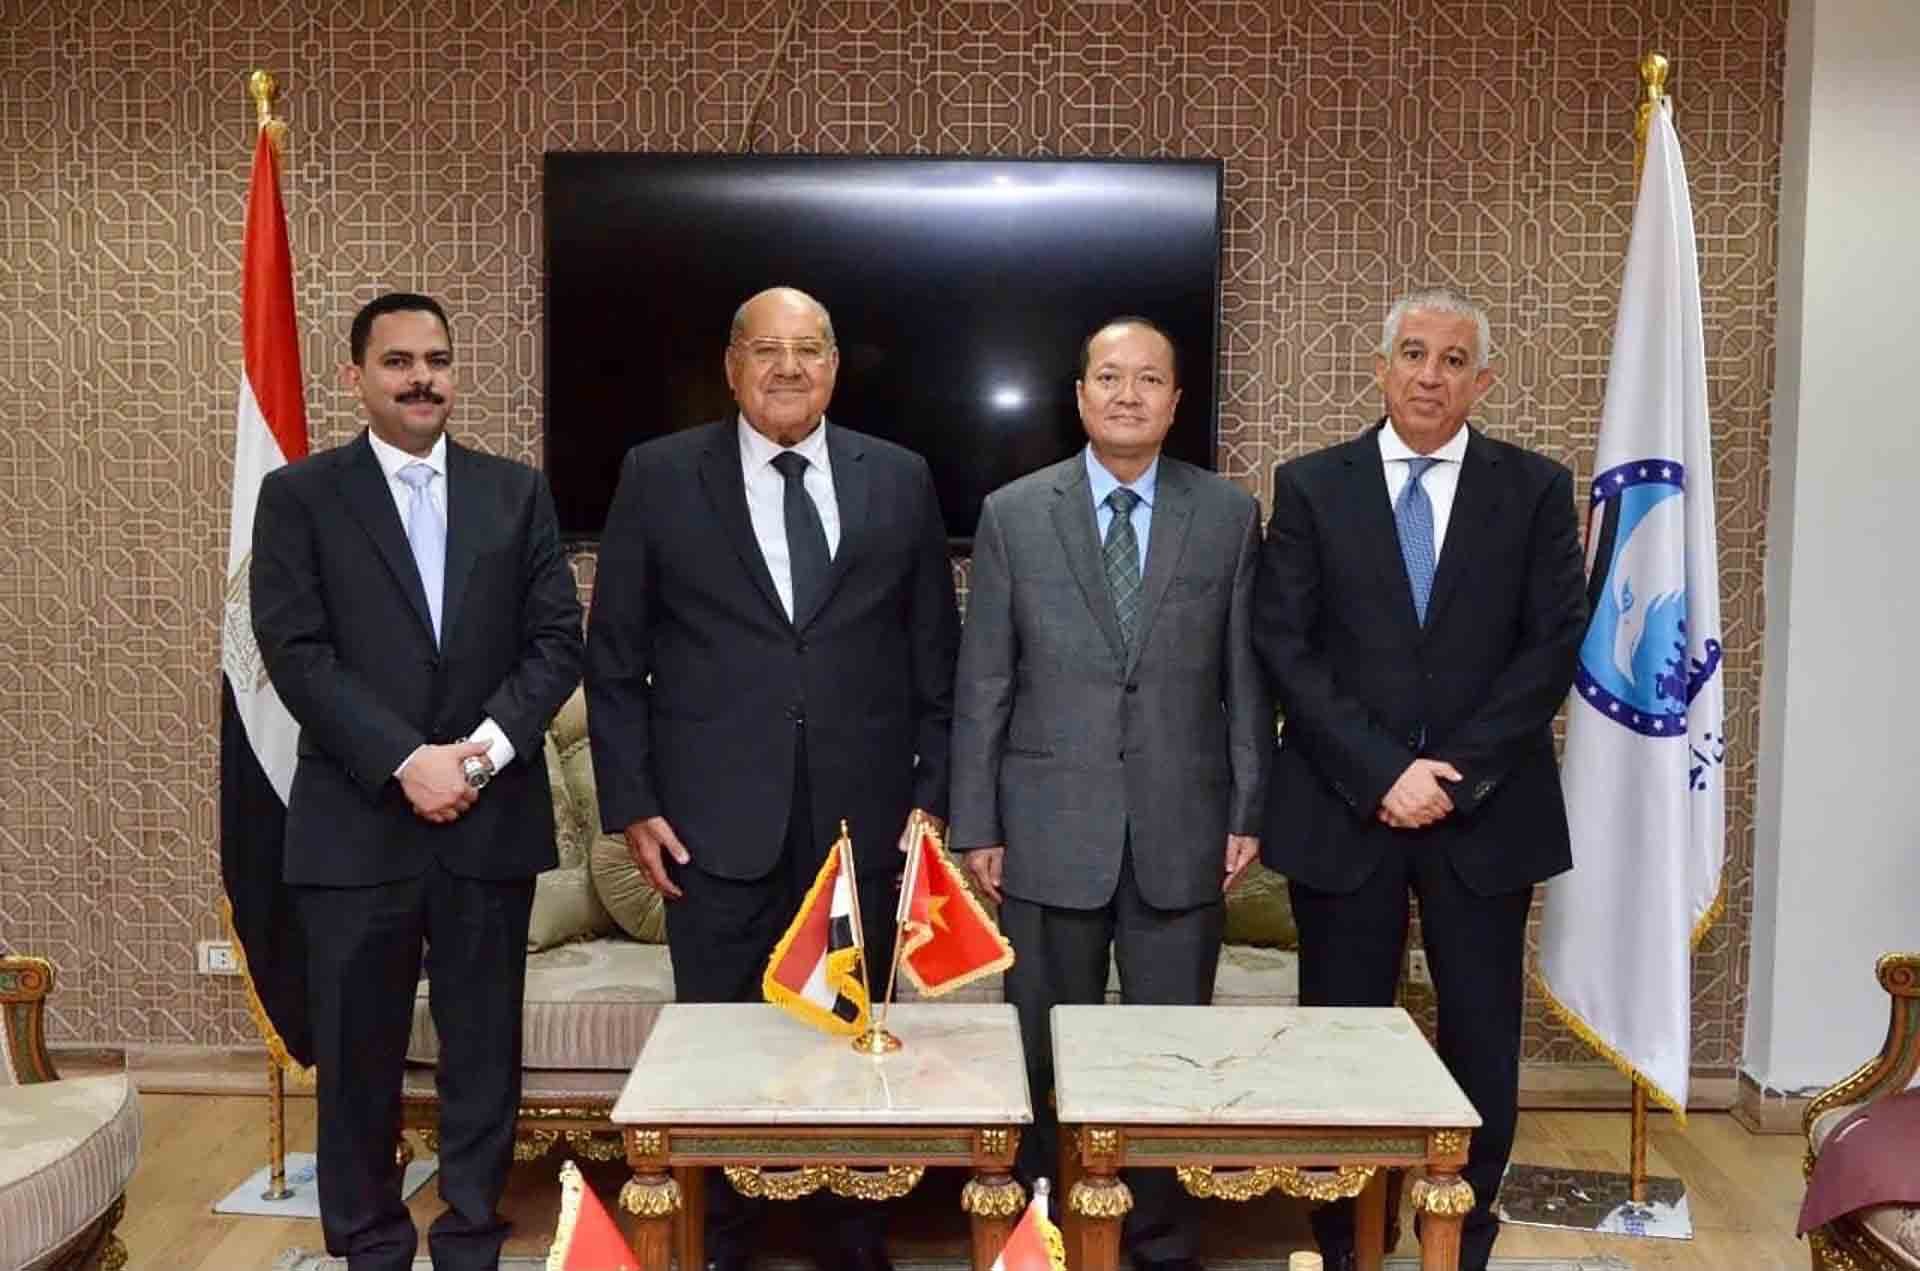 Đại sứ Nguyễn Huy Dũng chào xã giao ông Abdel Wahab Abdel Razek Chủ tịch Thượng viện Ai Cập, Chủ tịch Đảng Mustaqbal Watan.